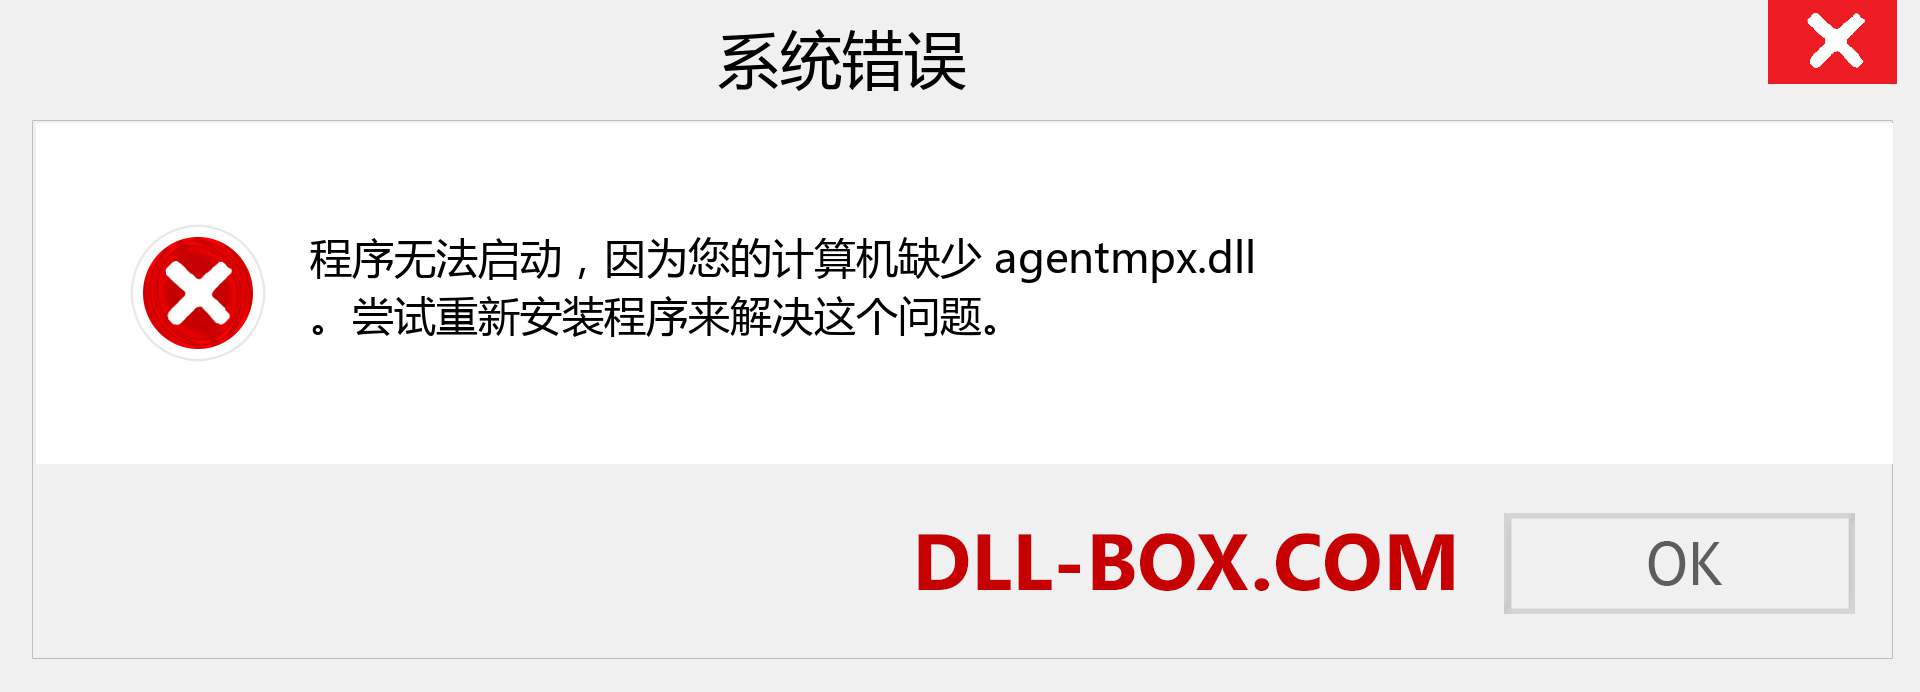 agentmpx.dll 文件丢失？。 适用于 Windows 7、8、10 的下载 - 修复 Windows、照片、图像上的 agentmpx dll 丢失错误